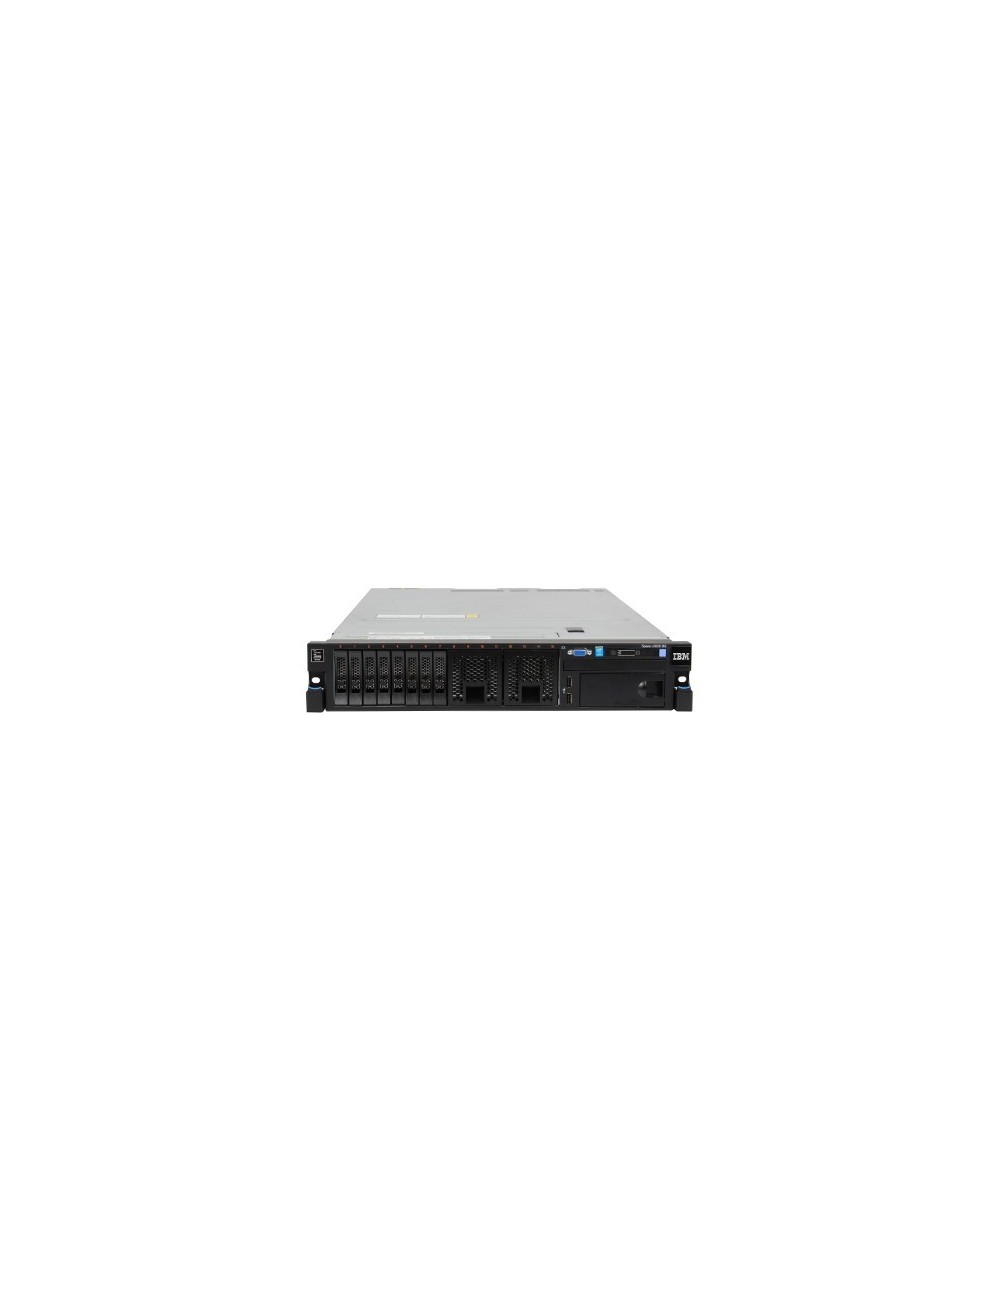 IBM System x3650 M4 server - 2x E5-2670 8C - 64 GB ram - ServeRAID M5110e 512MB